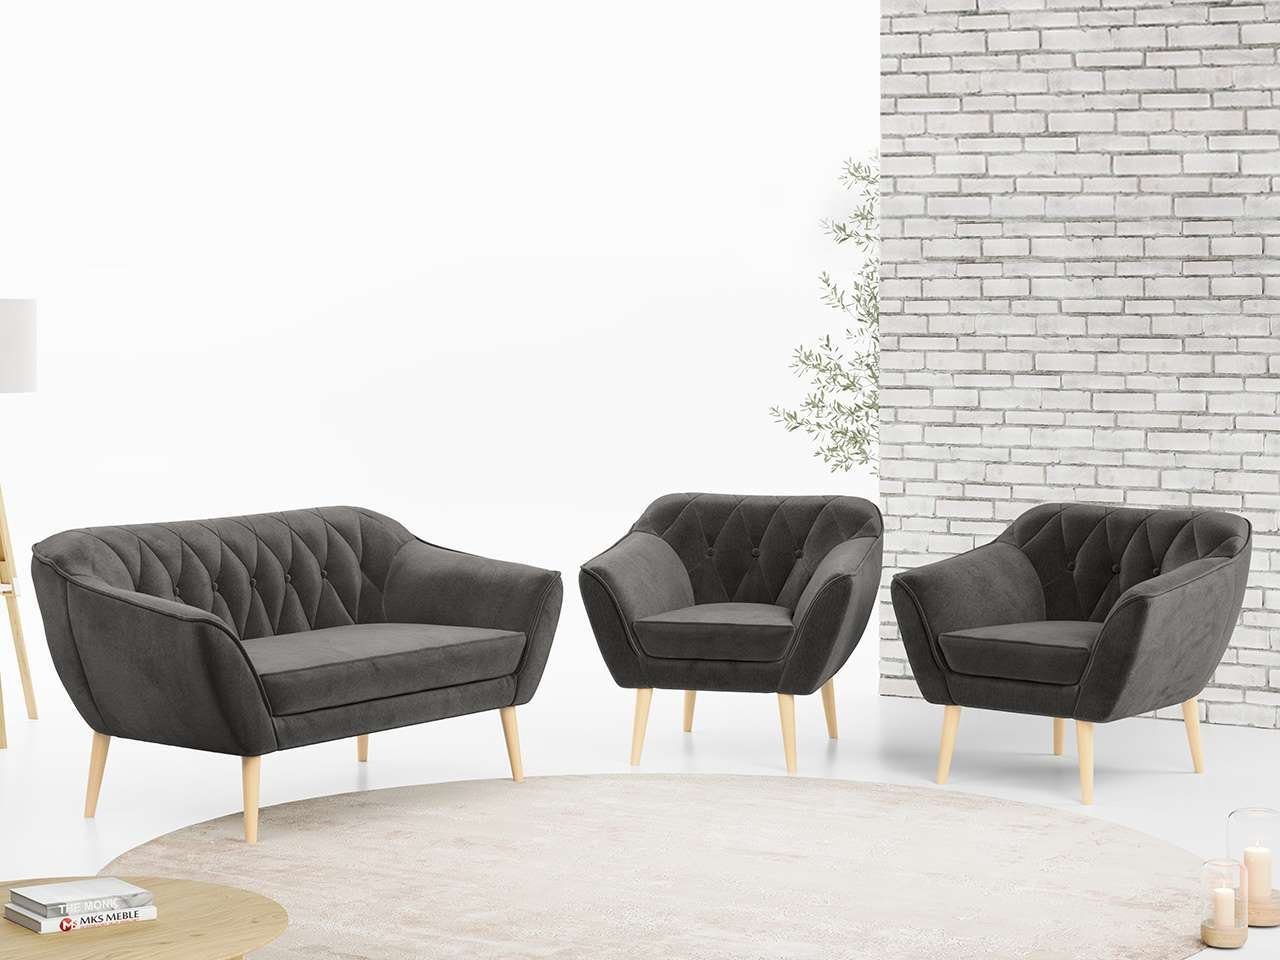 MKS MÖBEL Sofa PIRS 2 1 1, Moderne Sofa Set, Skandinavische Deko, Pirs Loungesofa und Zwei Sessels Grau Monolith | Alle Sofas